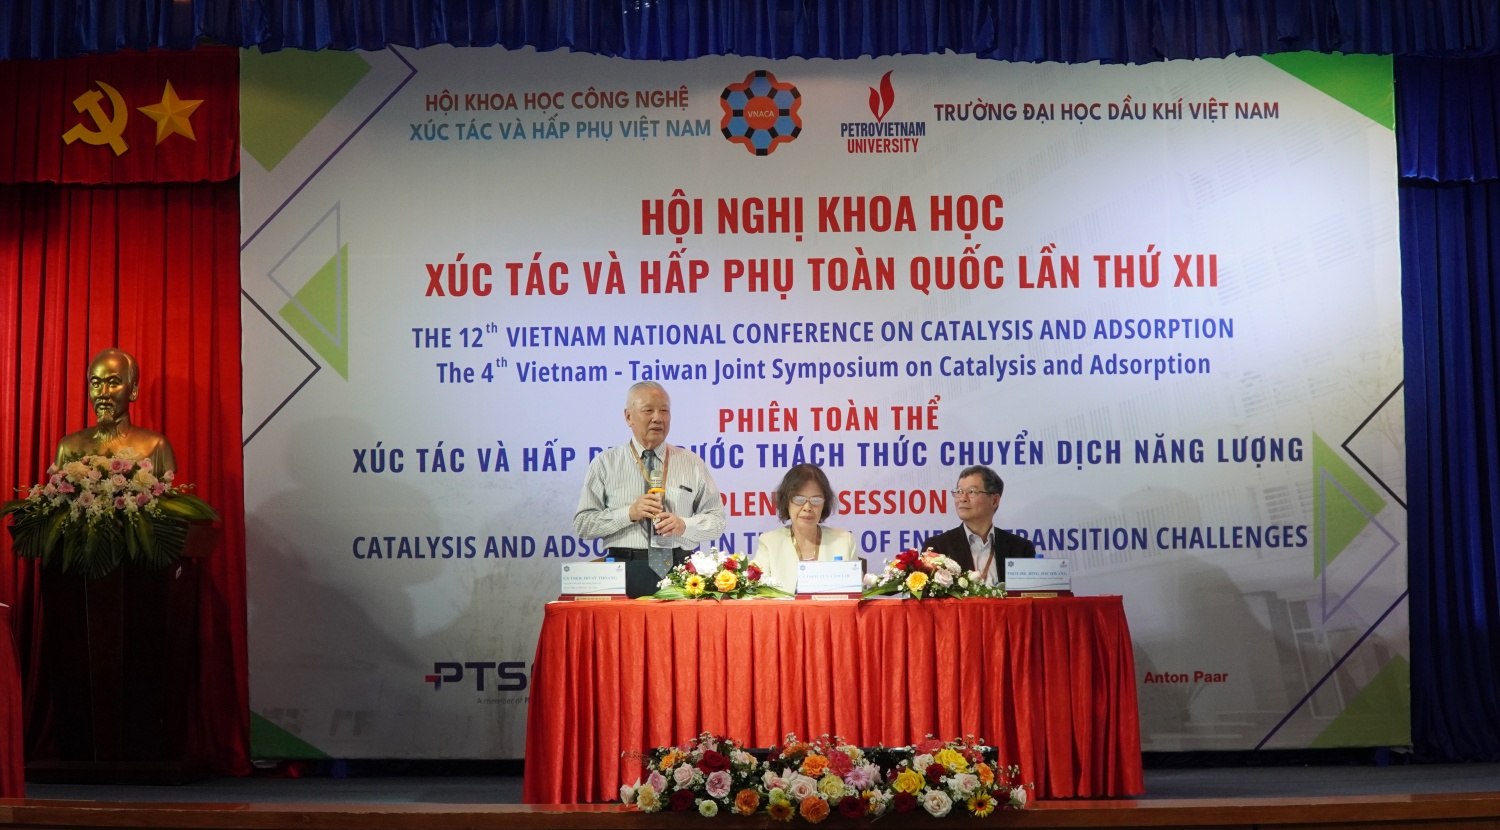 Trường Đại học Dầu khí Việt Nam tổ chức Hội nghị xúc tác và hấp phụ toàn quốc lần thứ XII